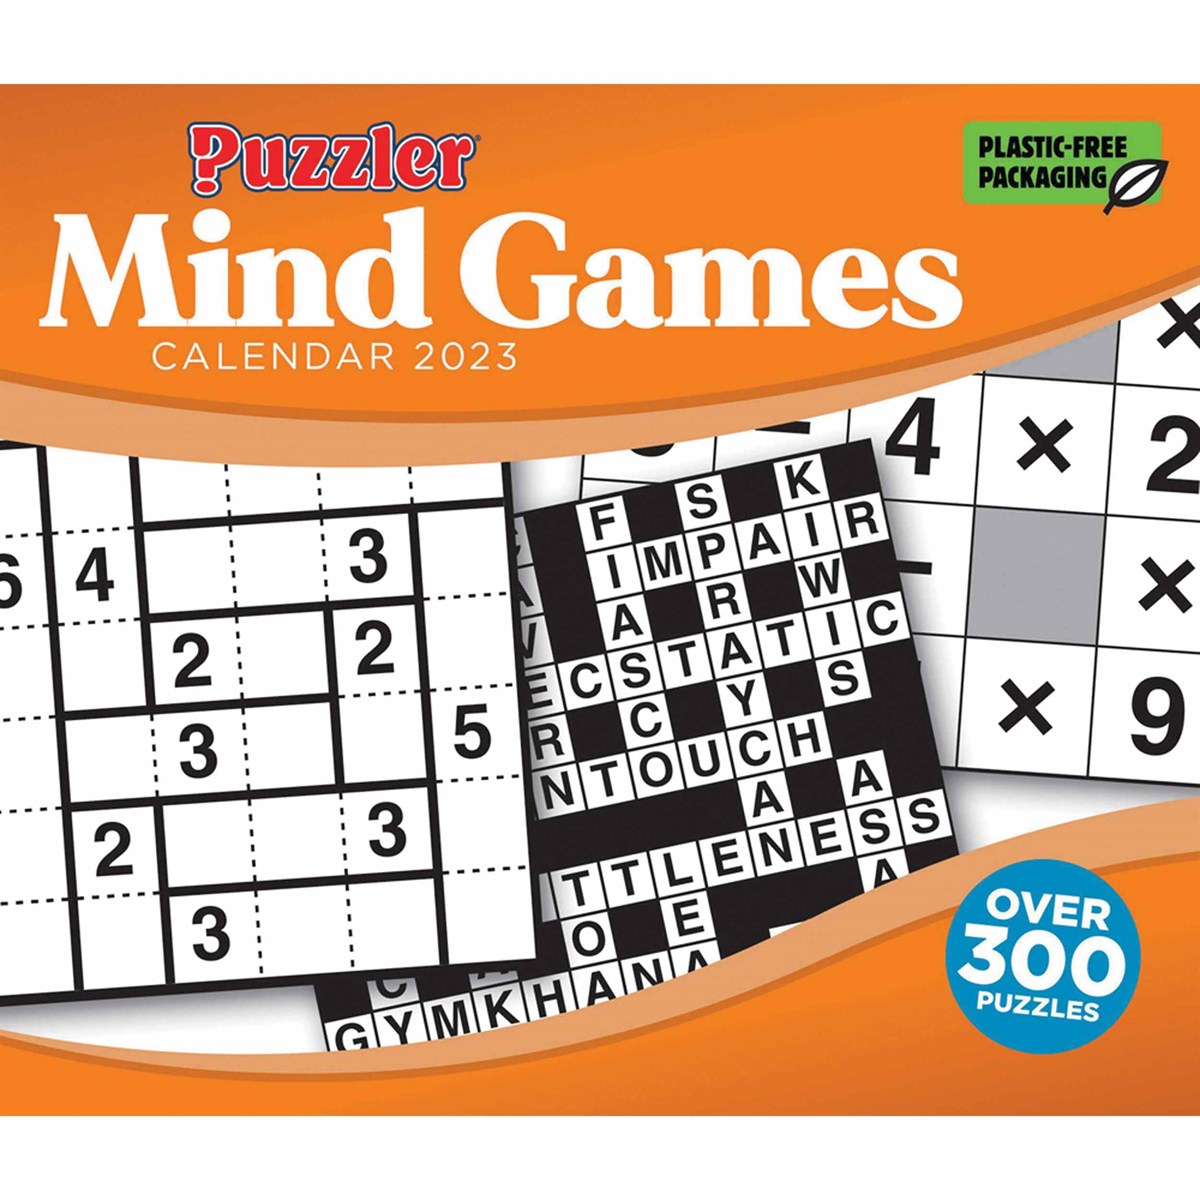 Mind Games, Puzzler Desk 2023 Calendars